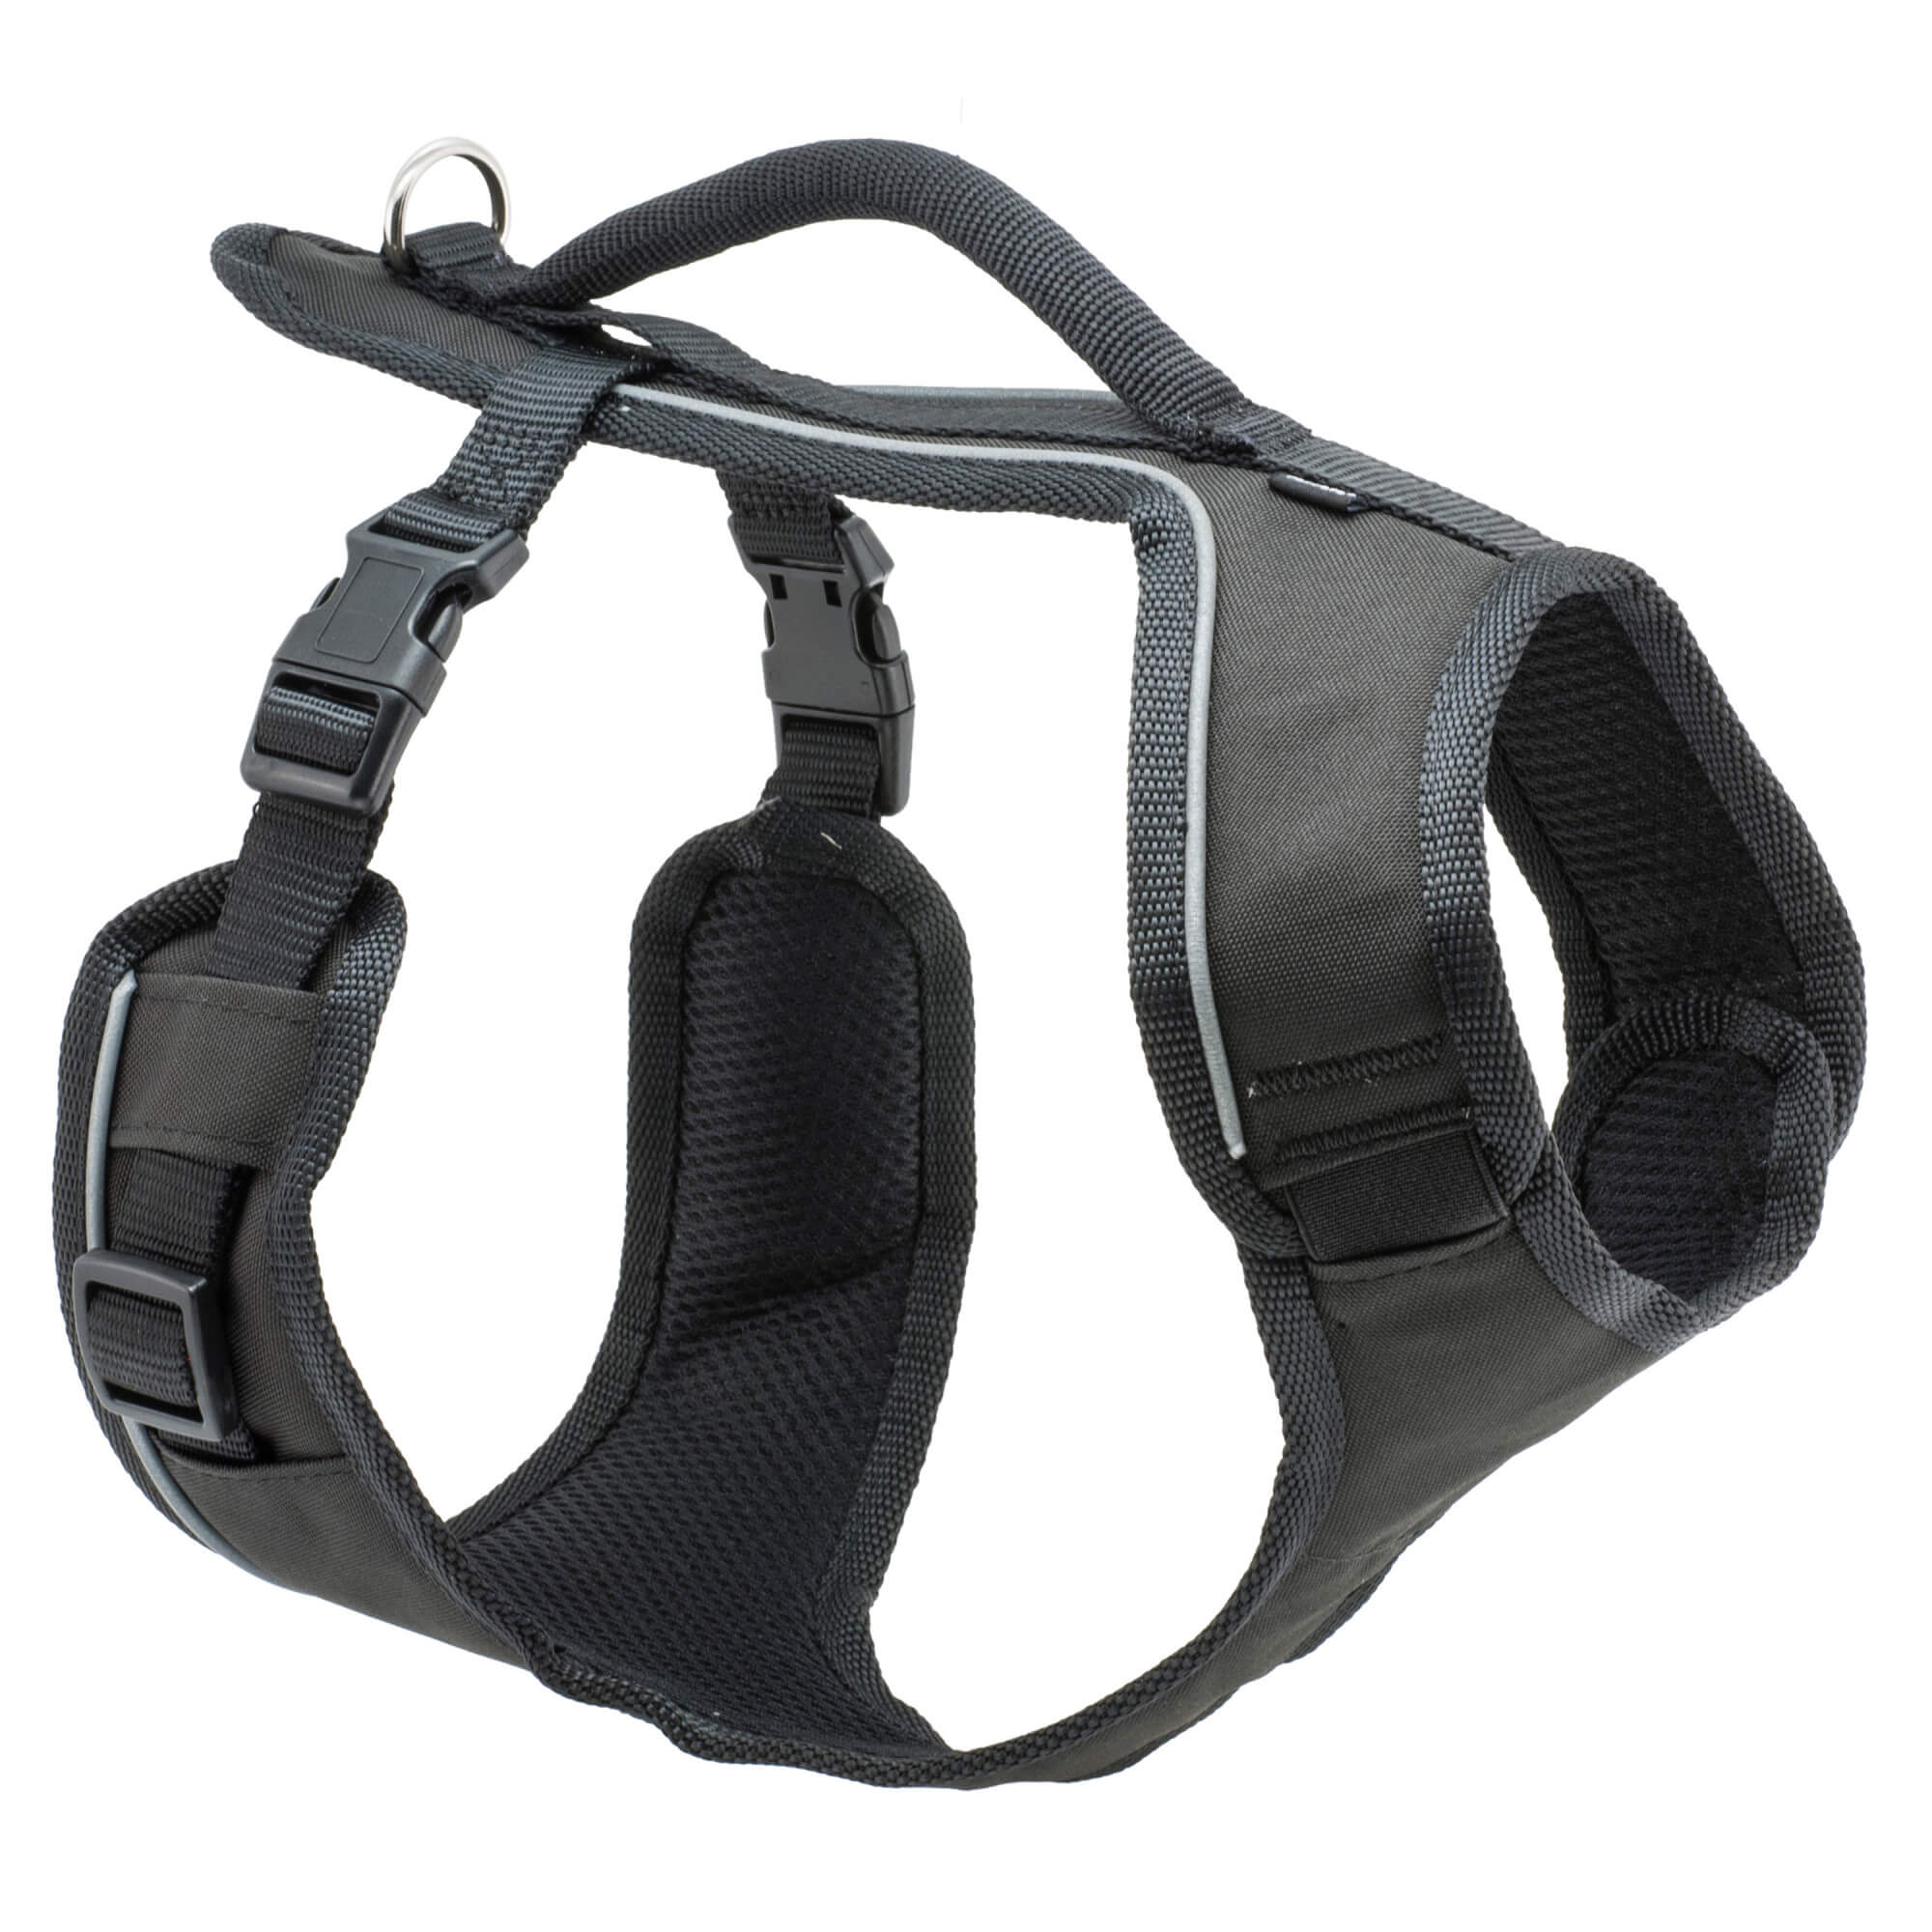 Black petsafe easysport harness in medium